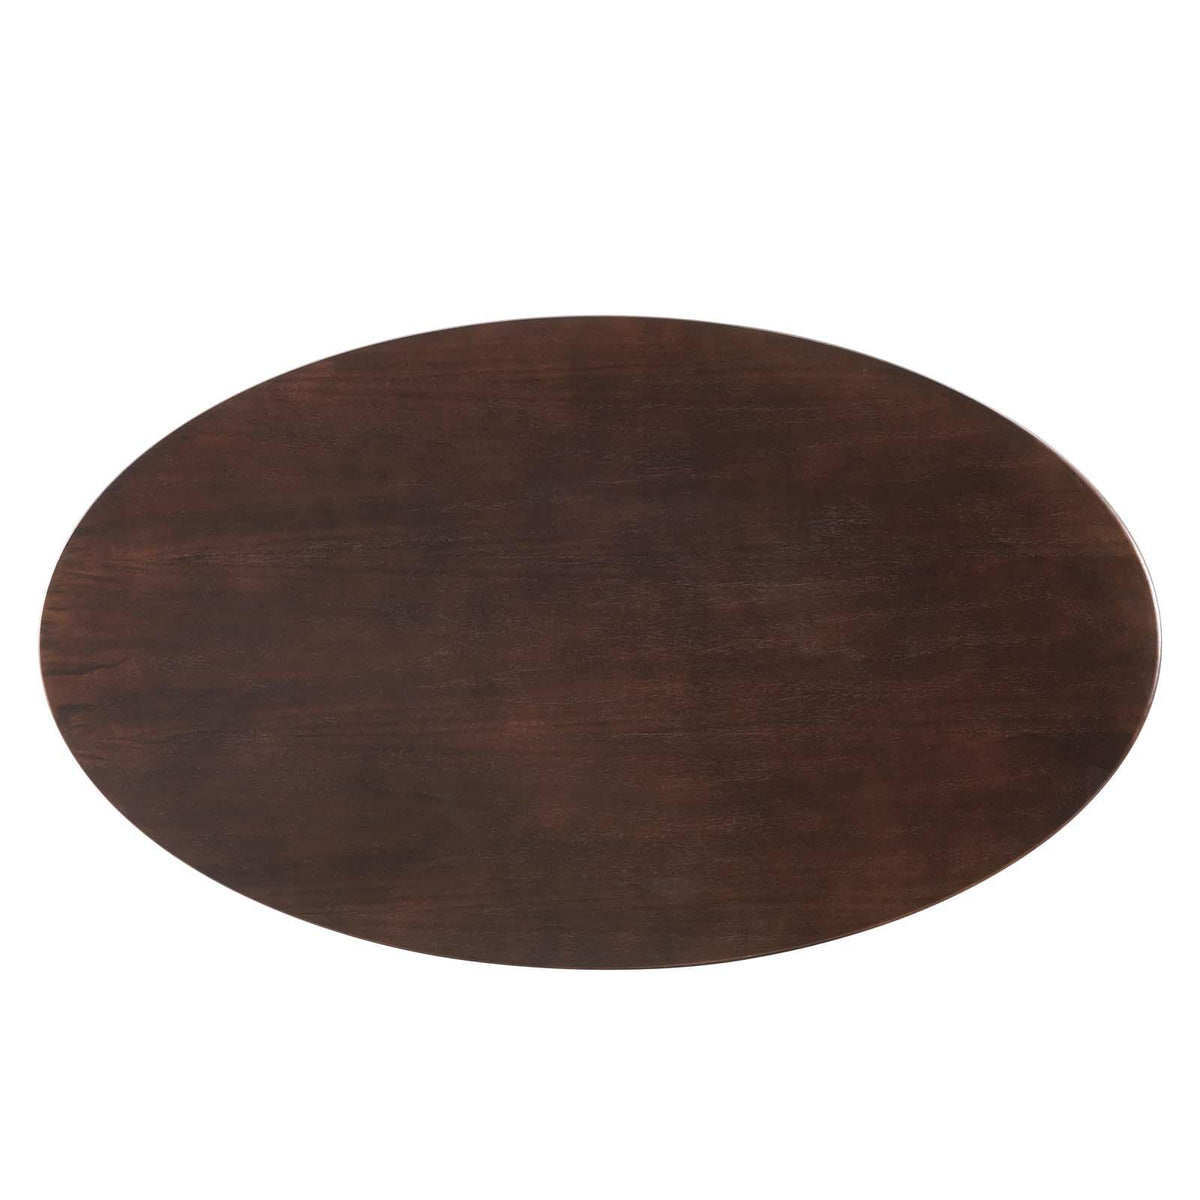 Modway Furniture Modern Lippa 48" Wood Oval Coffee Table - EEI-4883